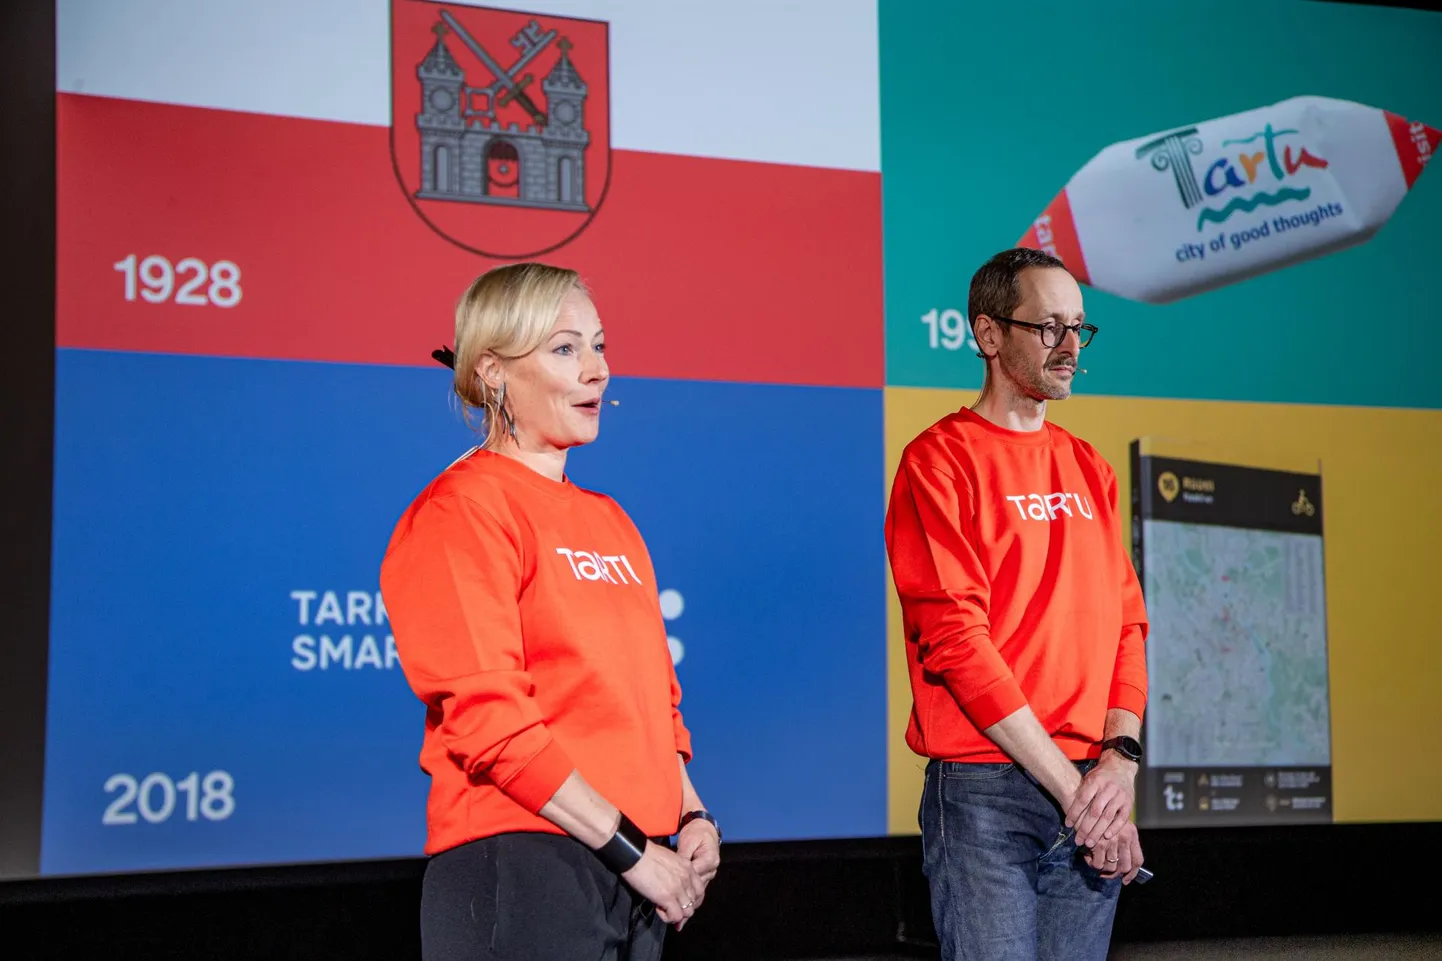 Helen Kalberg ja Alari Orav kandsid esitlusel pusa, mille peal on Tartu uus logo.